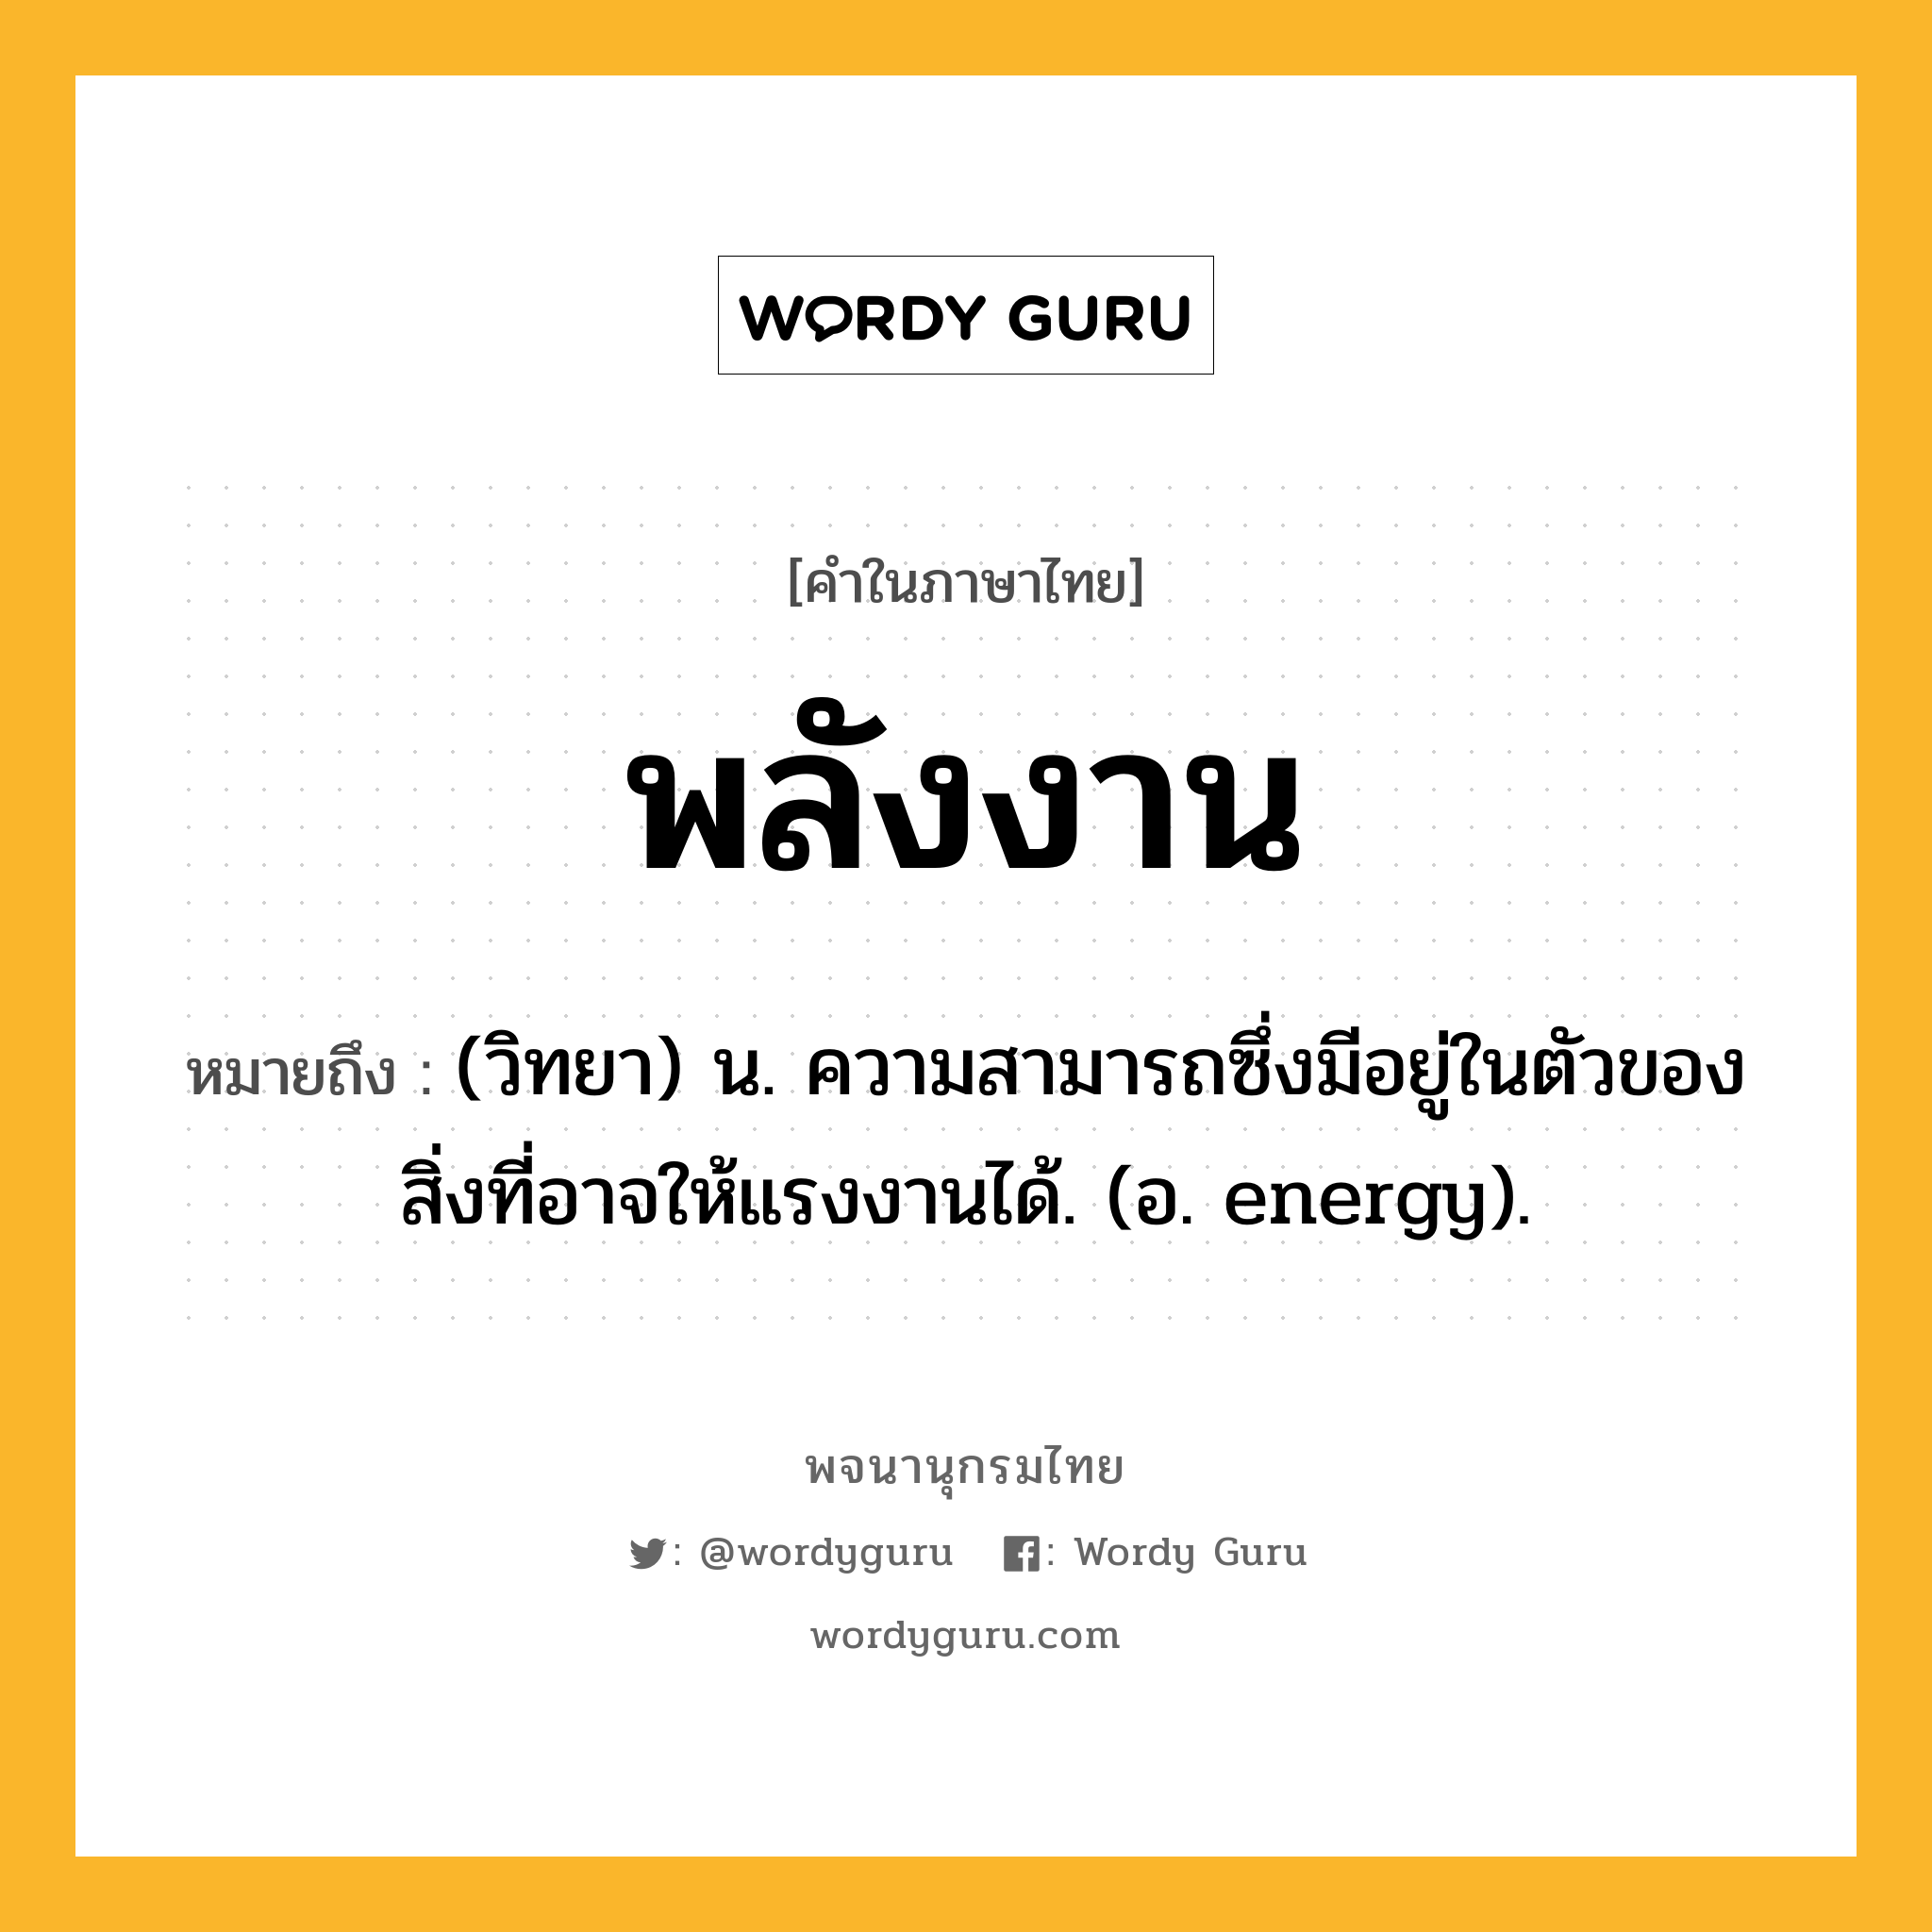 พลังงาน หมายถึงอะไร?, คำในภาษาไทย พลังงาน หมายถึง (วิทยา) น. ความสามารถซึ่งมีอยู่ในตัวของสิ่งที่อาจให้แรงงานได้. (อ. energy).